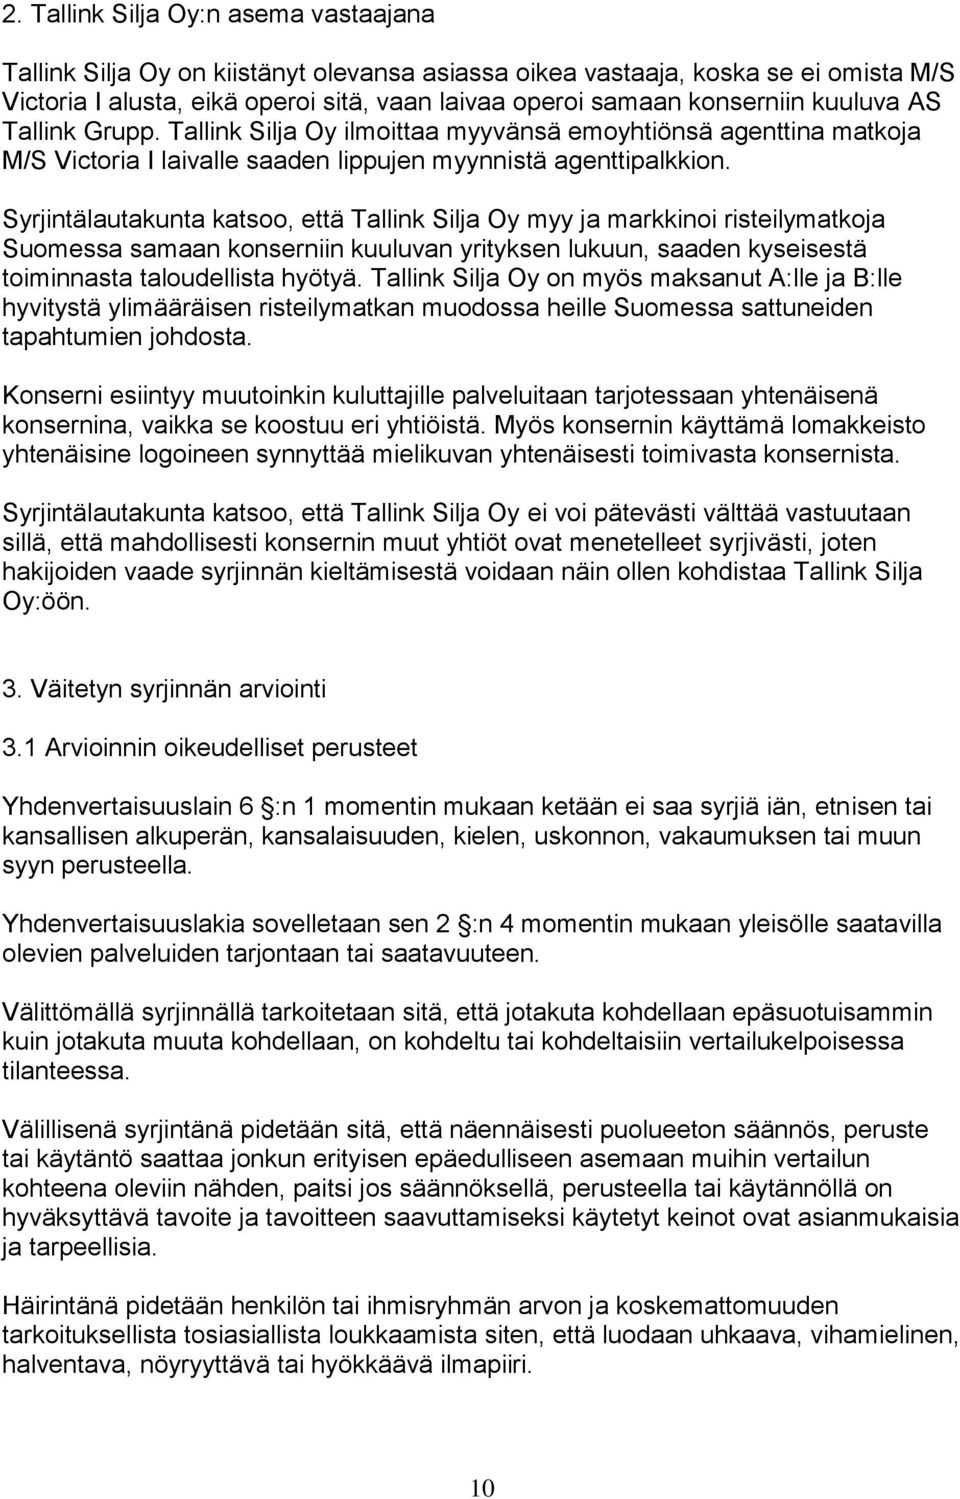 Syrjintälautakunta katsoo, että Tallink Silja Oy myy ja markkinoi risteilymatkoja Suomessa samaan konserniin kuuluvan yrityksen lukuun, saaden kyseisestä toiminnasta taloudellista hyötyä.